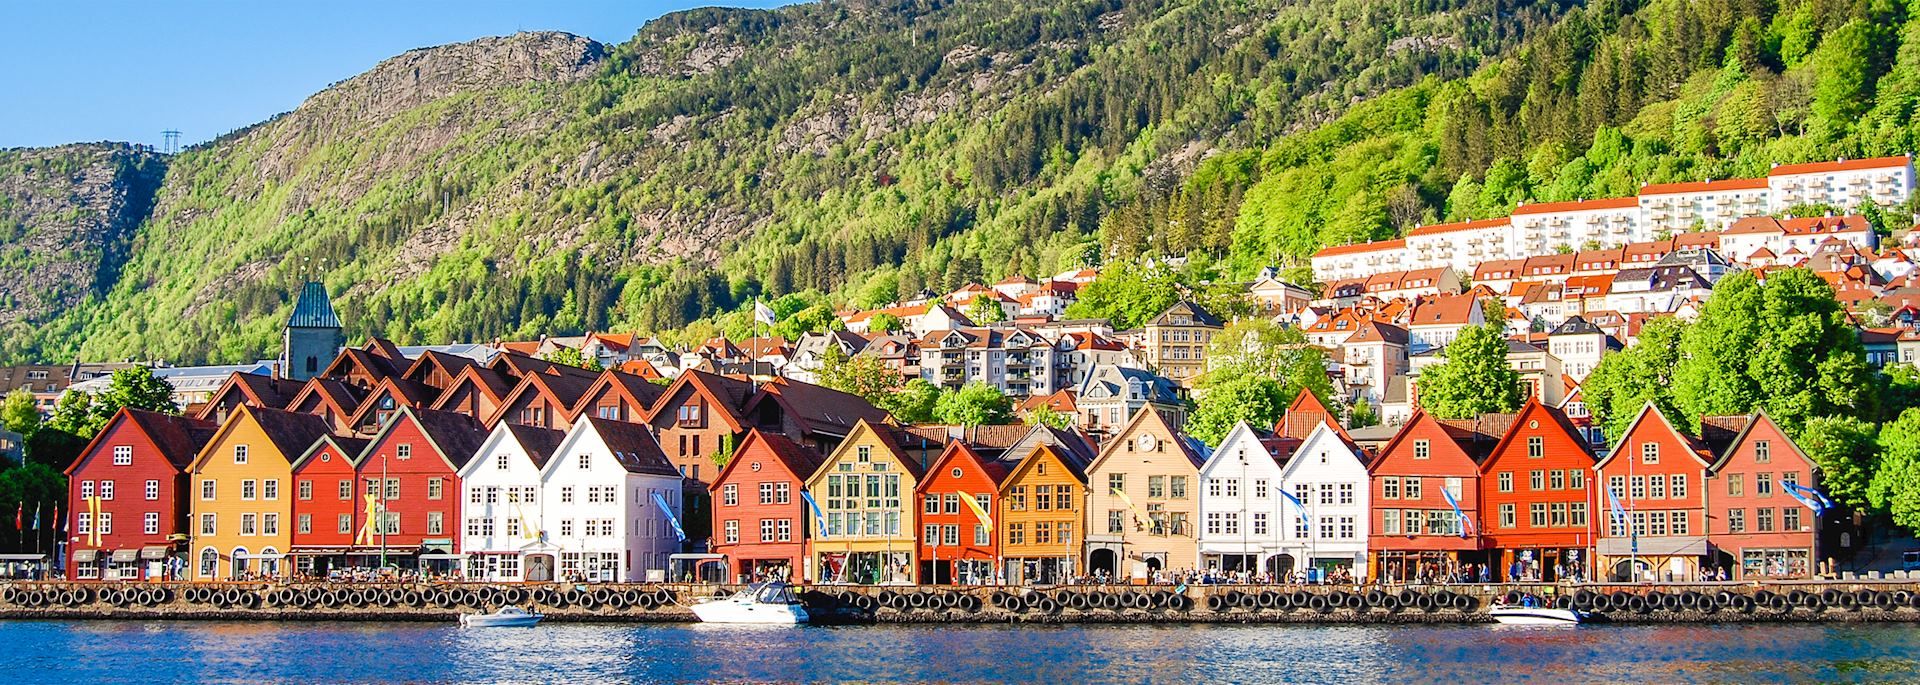 Bergen coastline